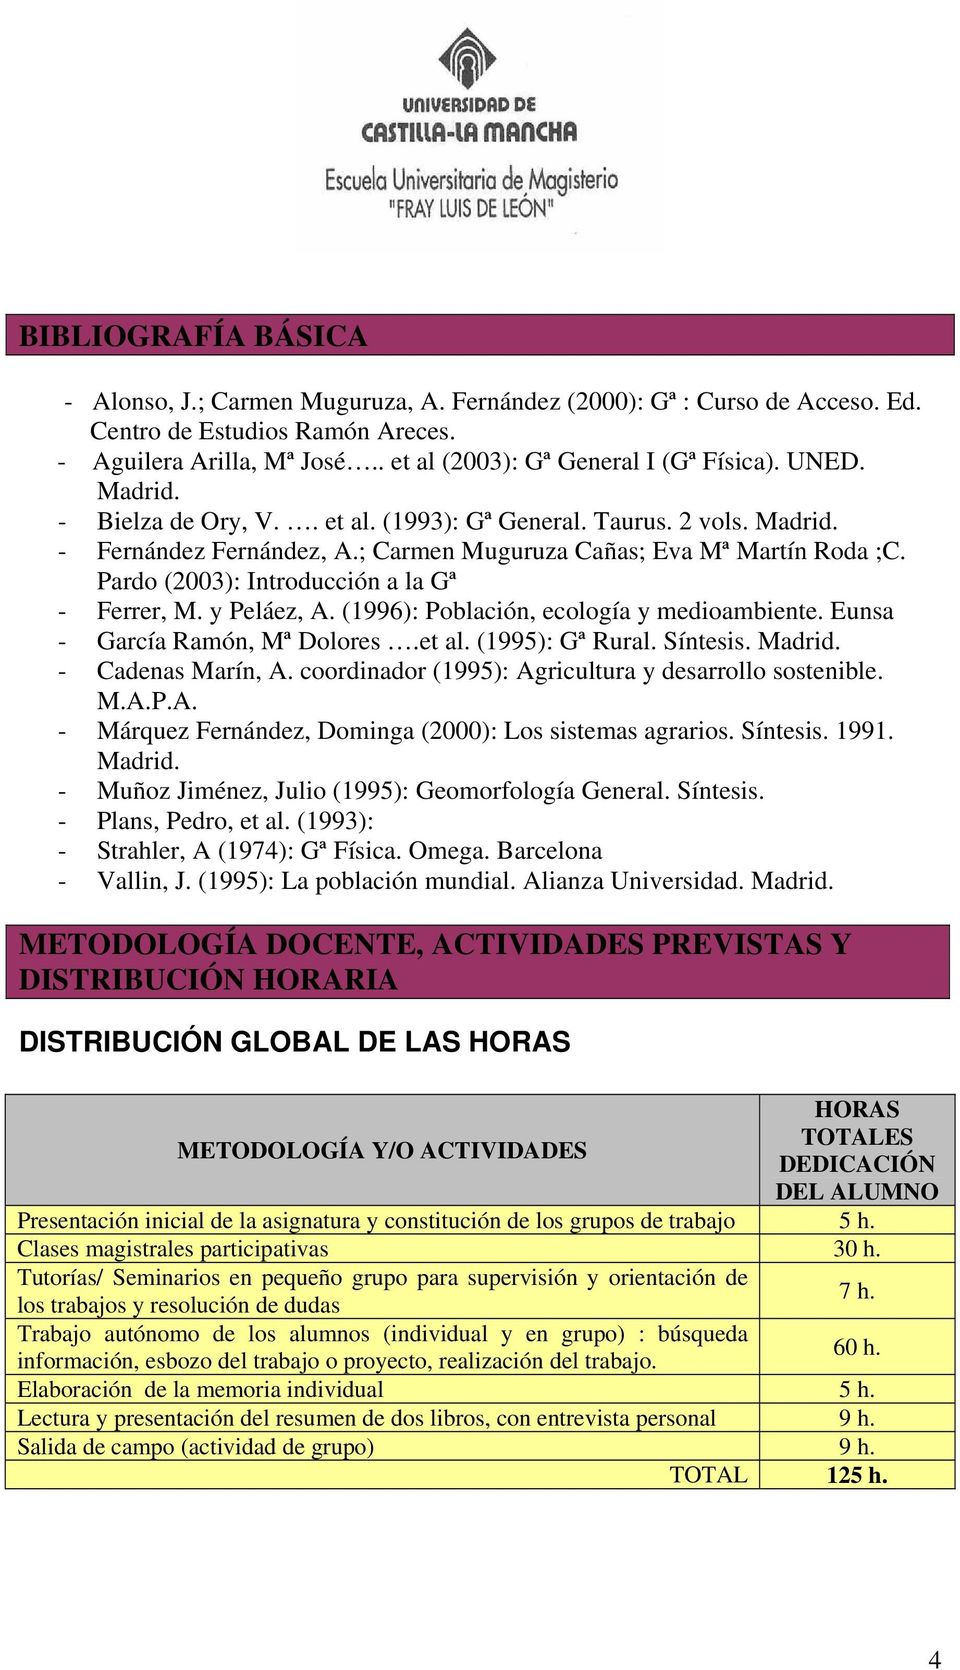 Pardo (2003): Introducción a la Gª - Ferrer, M. y Peláez, A. (1996): Población, ecología y medioambiente. Eunsa - García Ramón, Mª Dolores.et al. (1995): Gª Rural. Síntesis. Madrid.